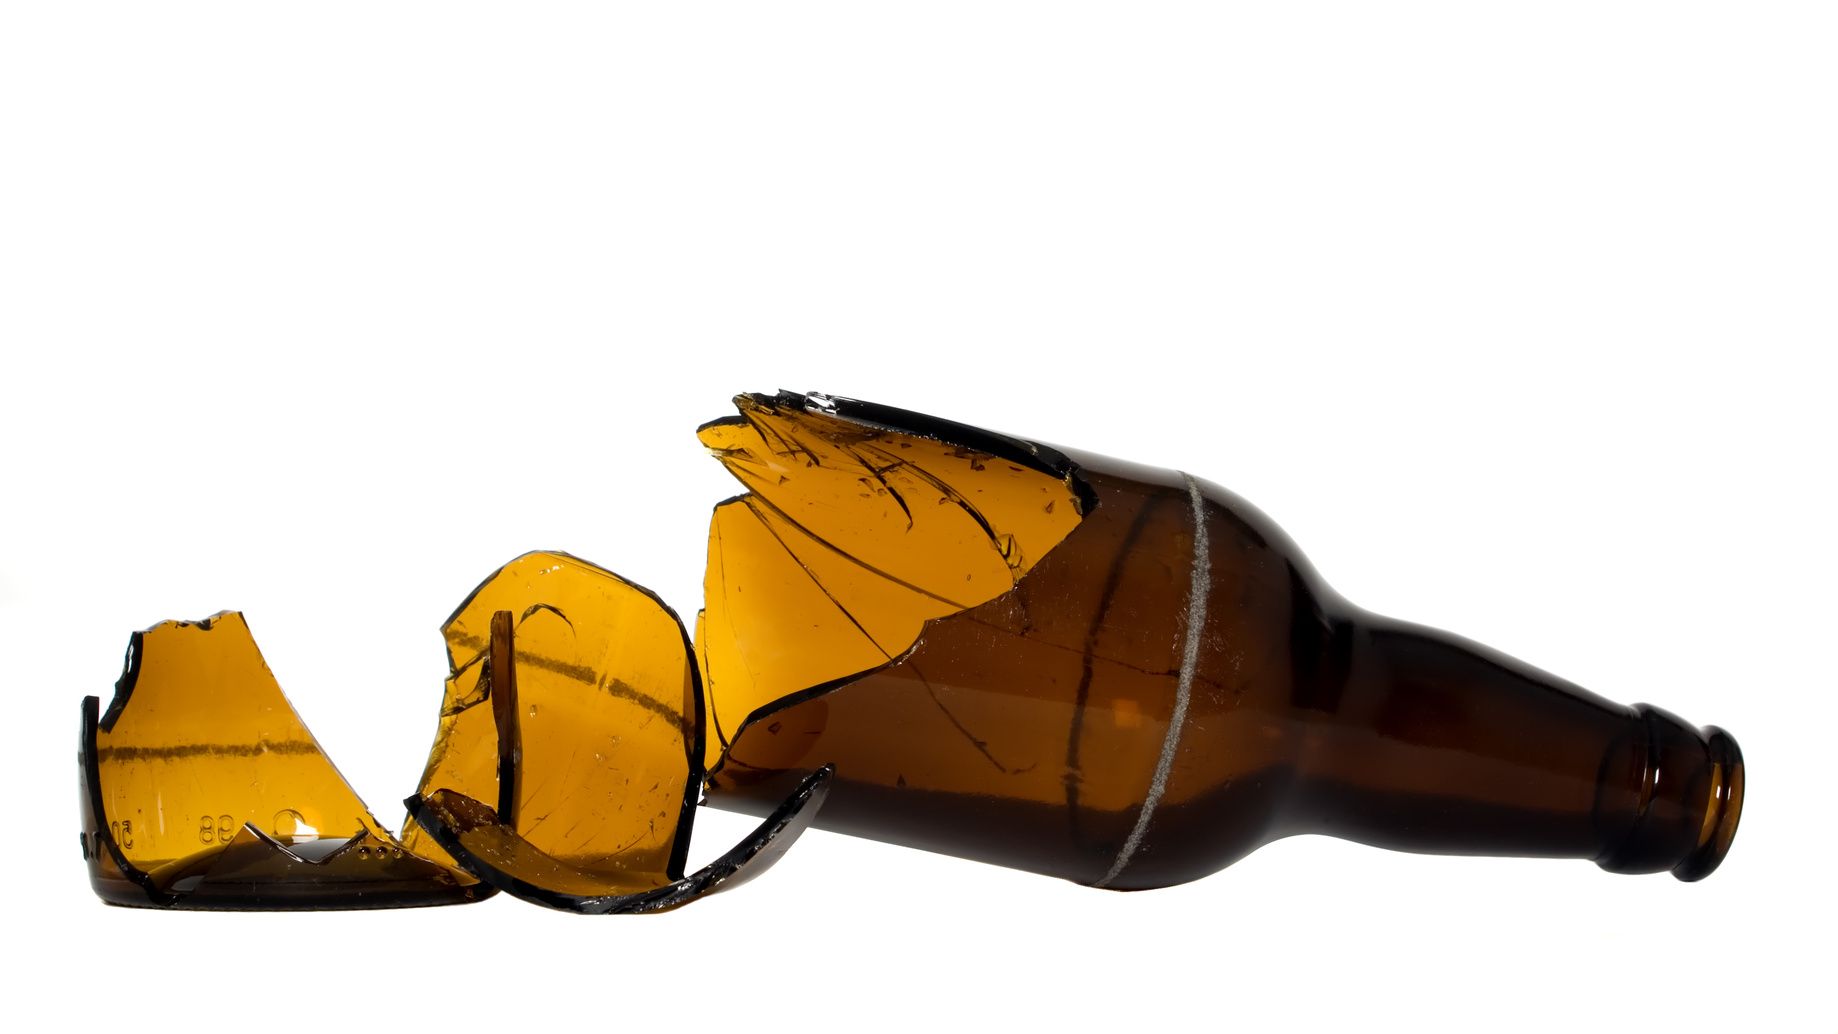 Brown bottle bondage